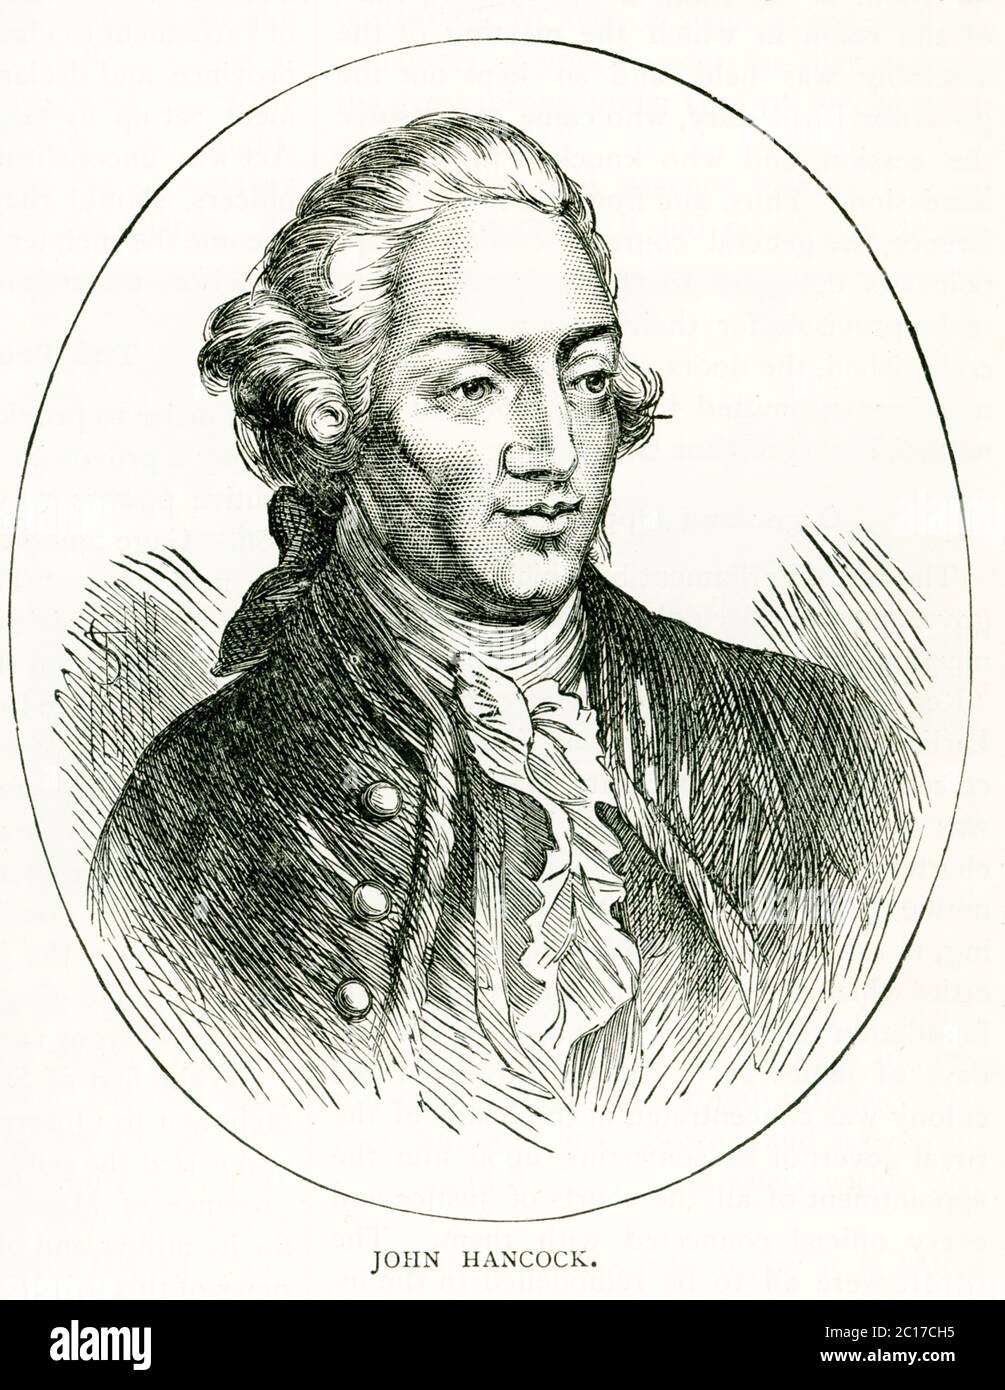 John Hancock, patriote américain de la Révolution (1737-1793), était un signataire de la Déclaration d'indépendance. Il a fortement encouragé la résistance à la domination britannique et a été président du Congrès continental de 1775 à 1777. Banque D'Images